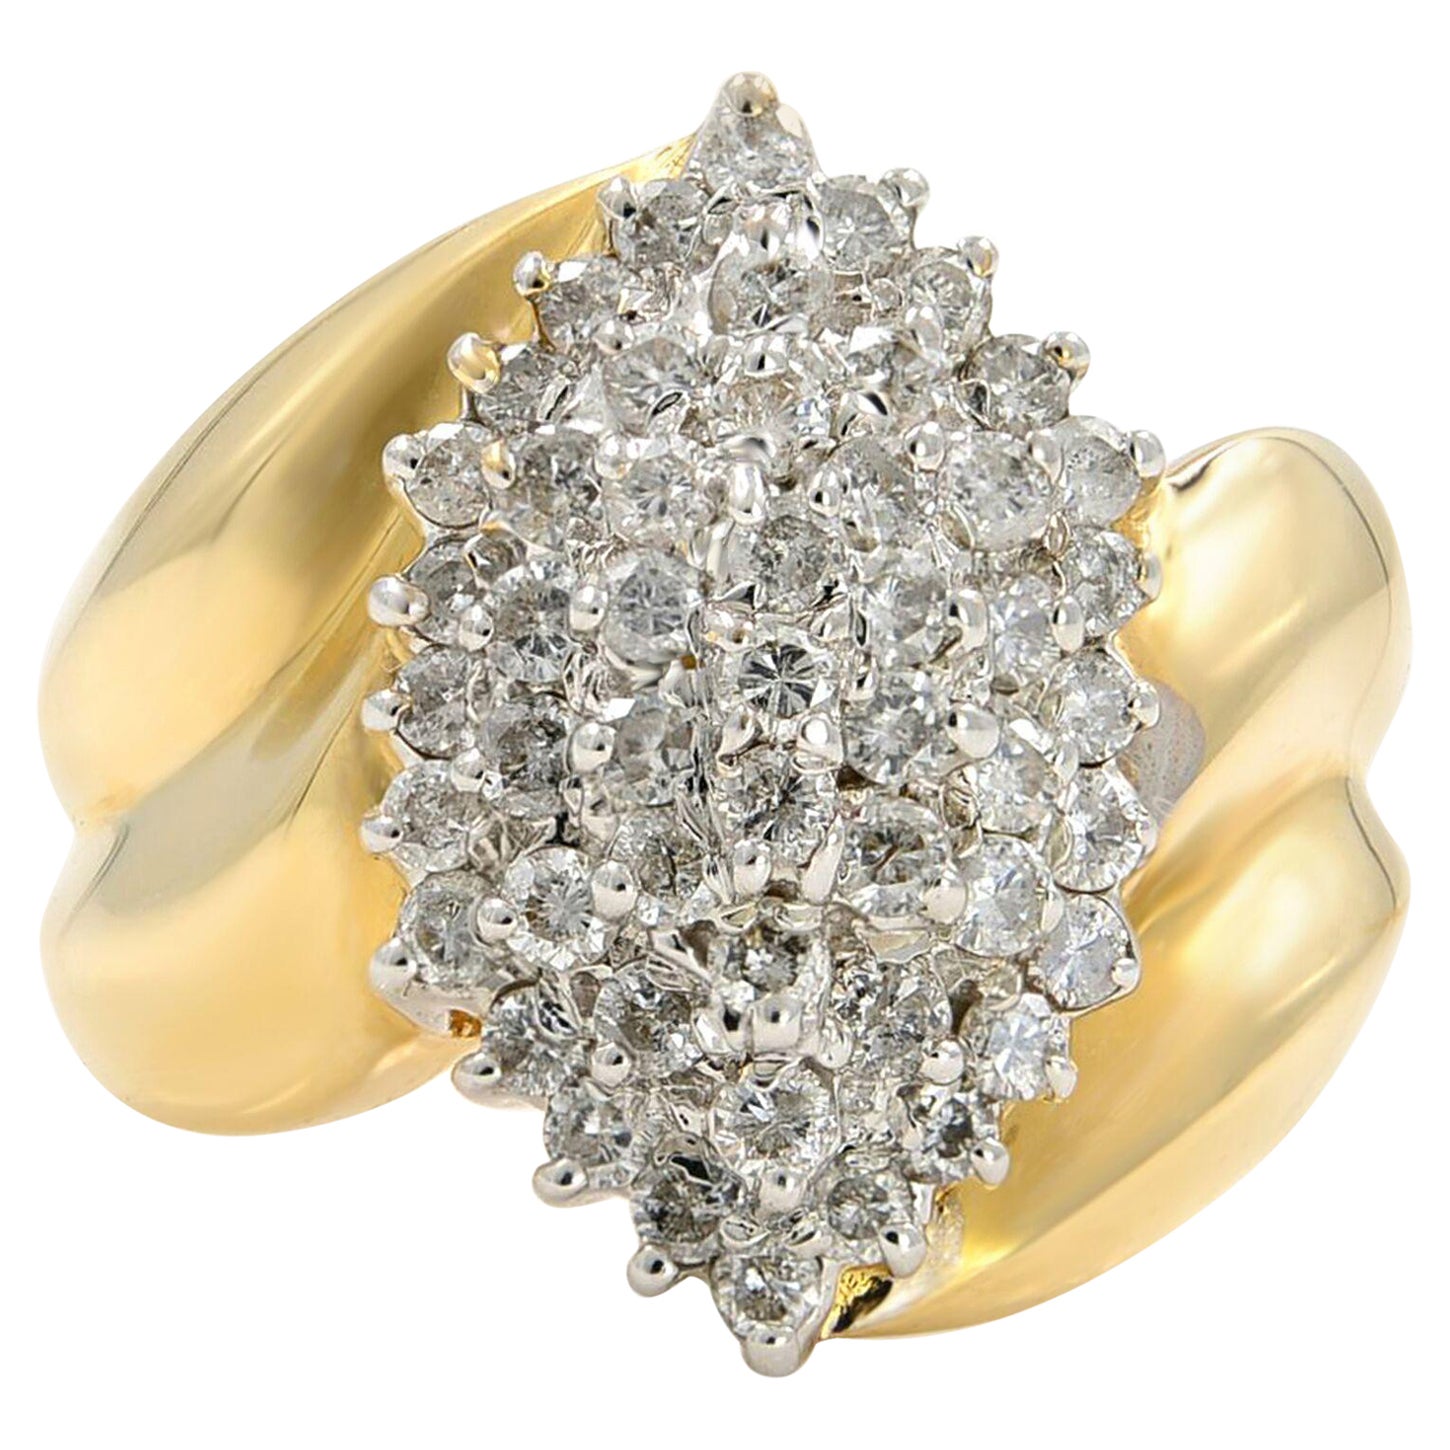 Rachel Koen Cluster Diamond Ring 14K Yellow Gold 1.30cttw